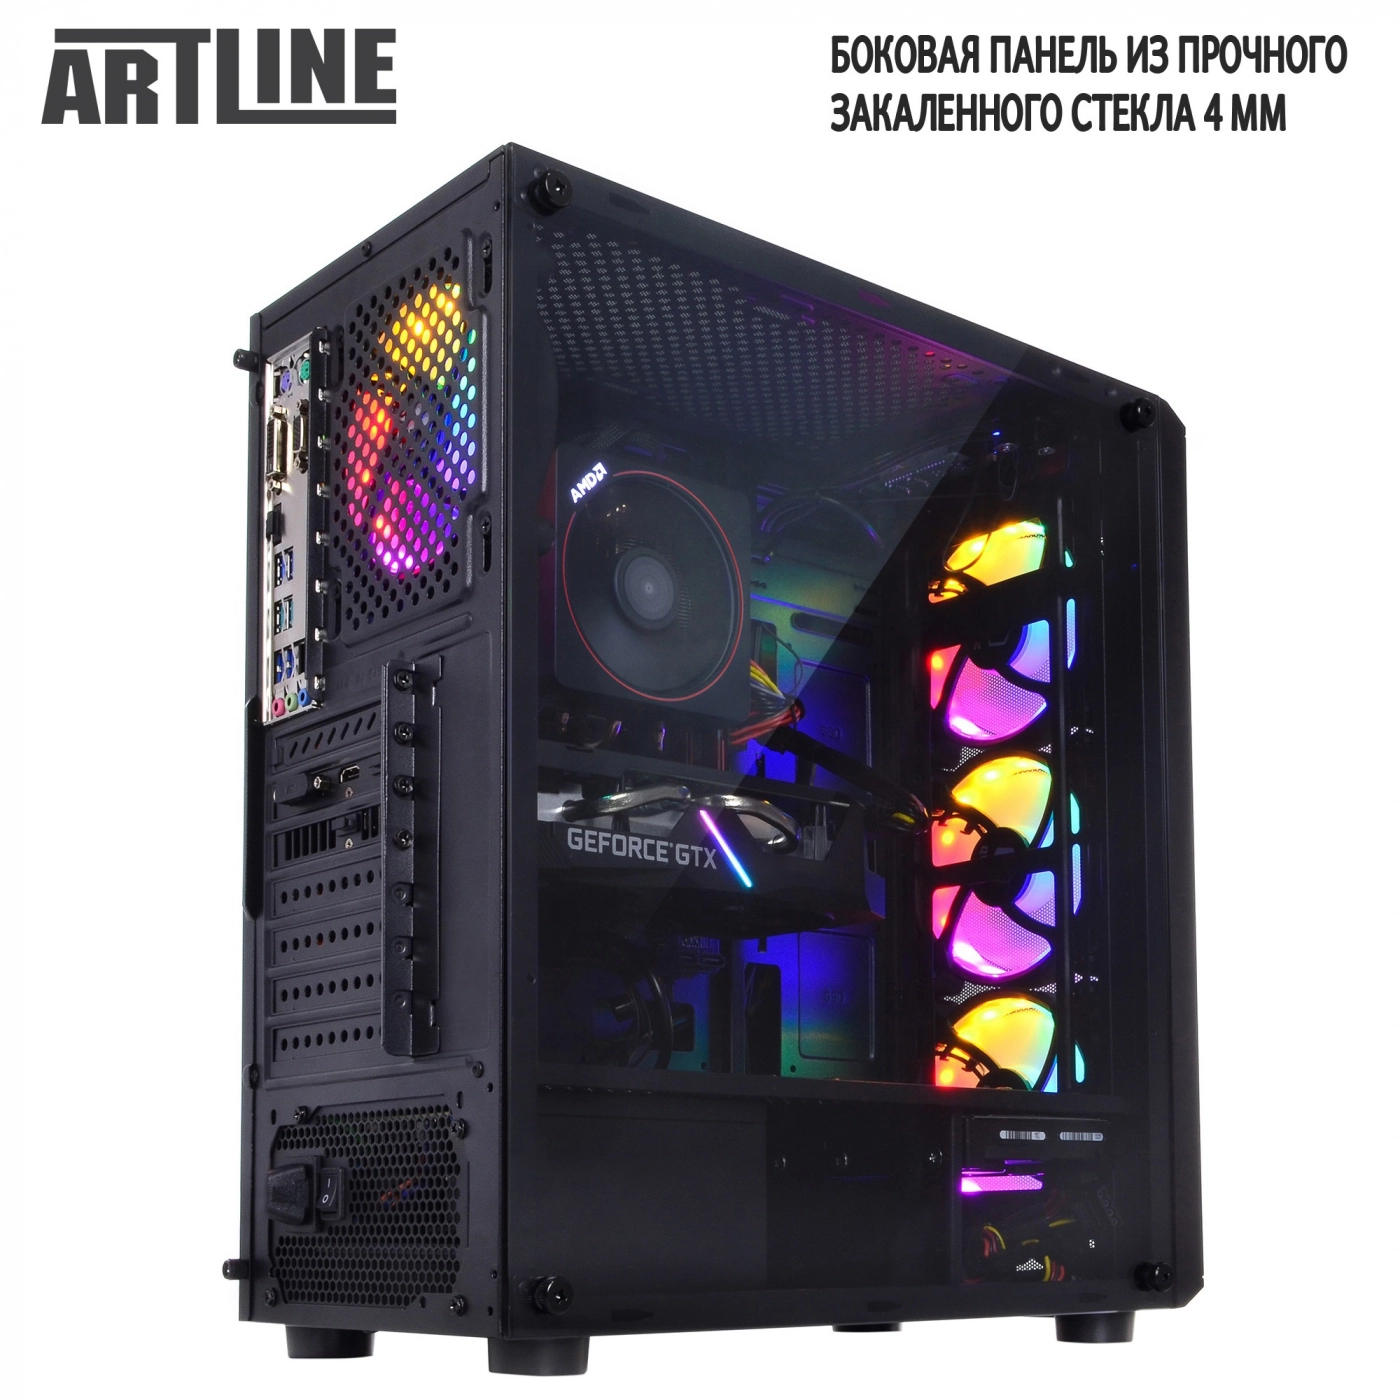 Купить Компьютер ARTLINE Gaming X43v015 - фото 9